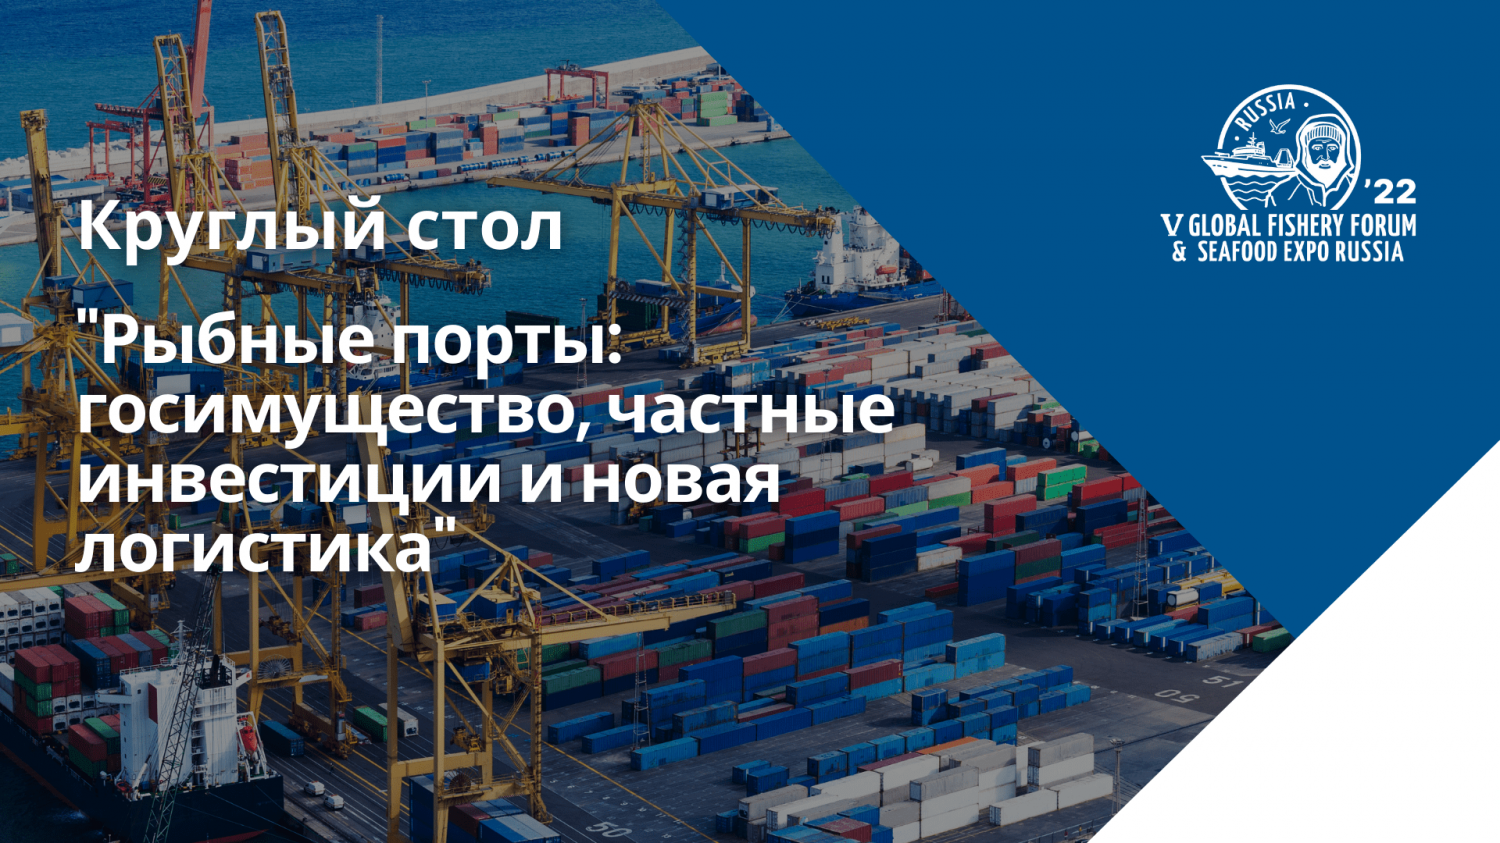 Развитие портовой инфраструктуры обсудят на Seafood Expo Russia 